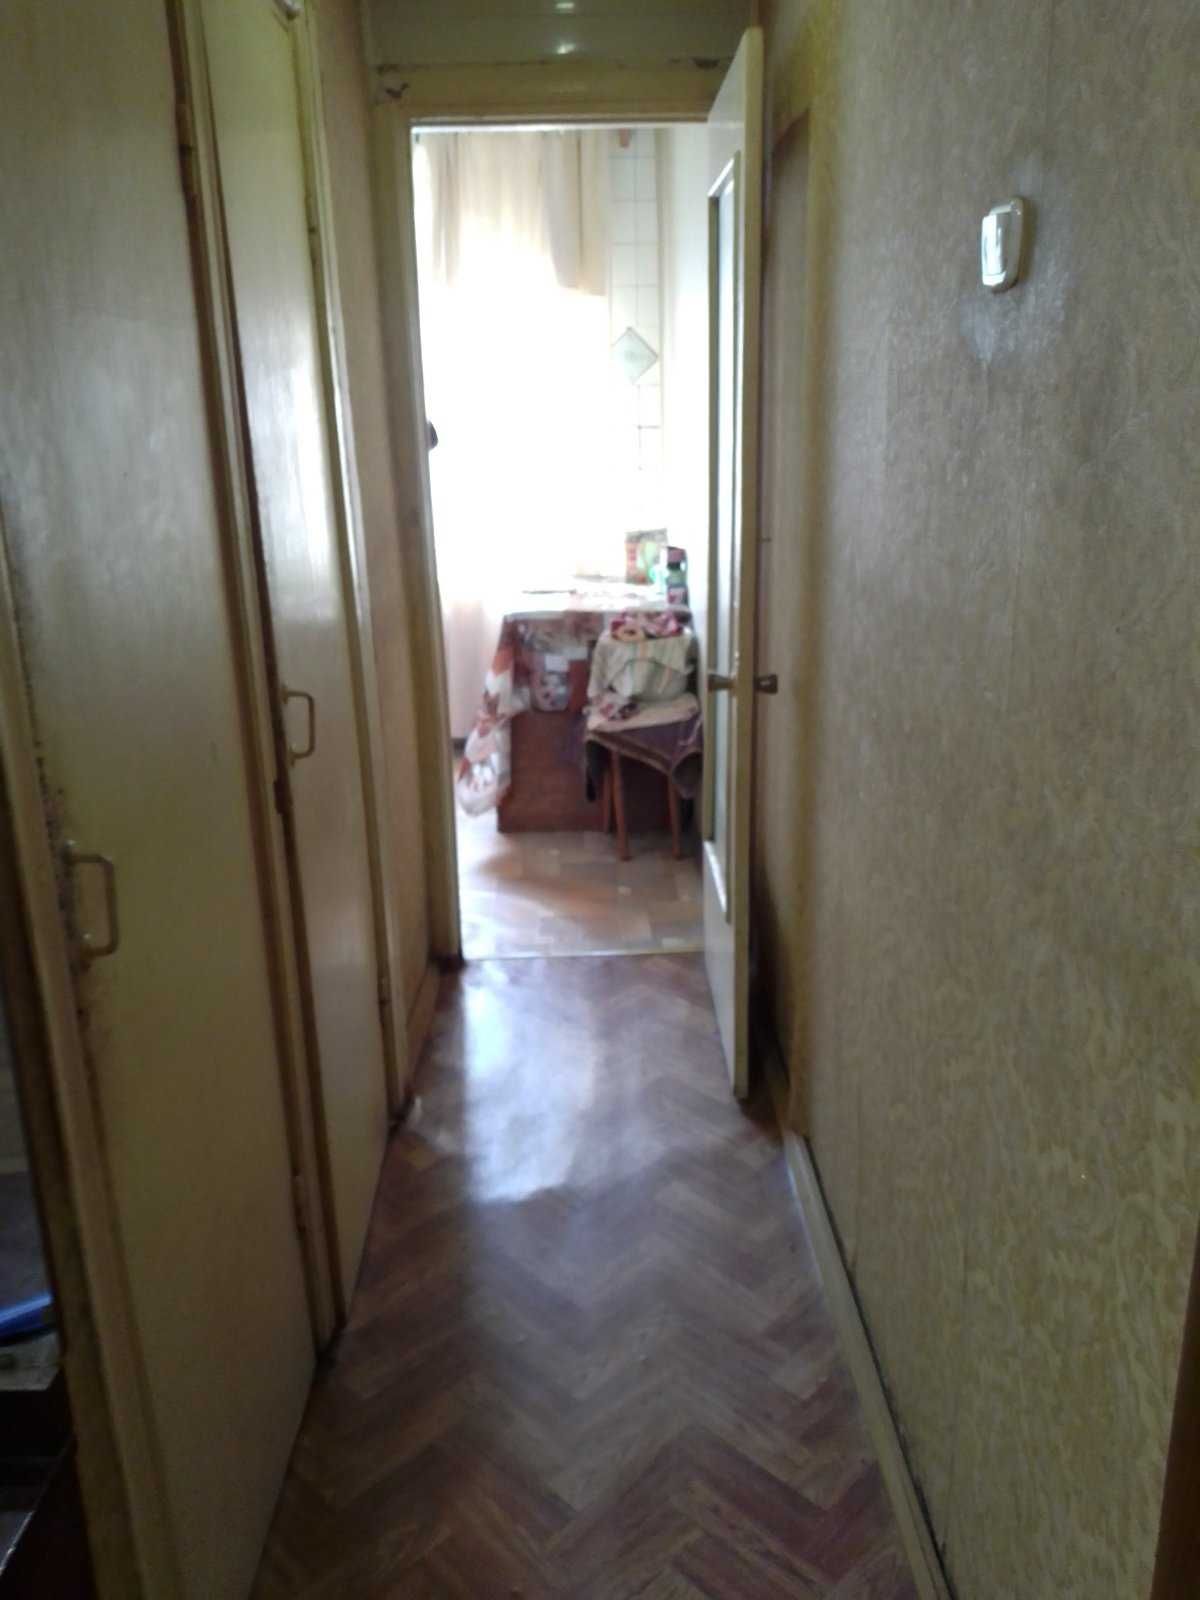 Продам квартиру в Кременчуге